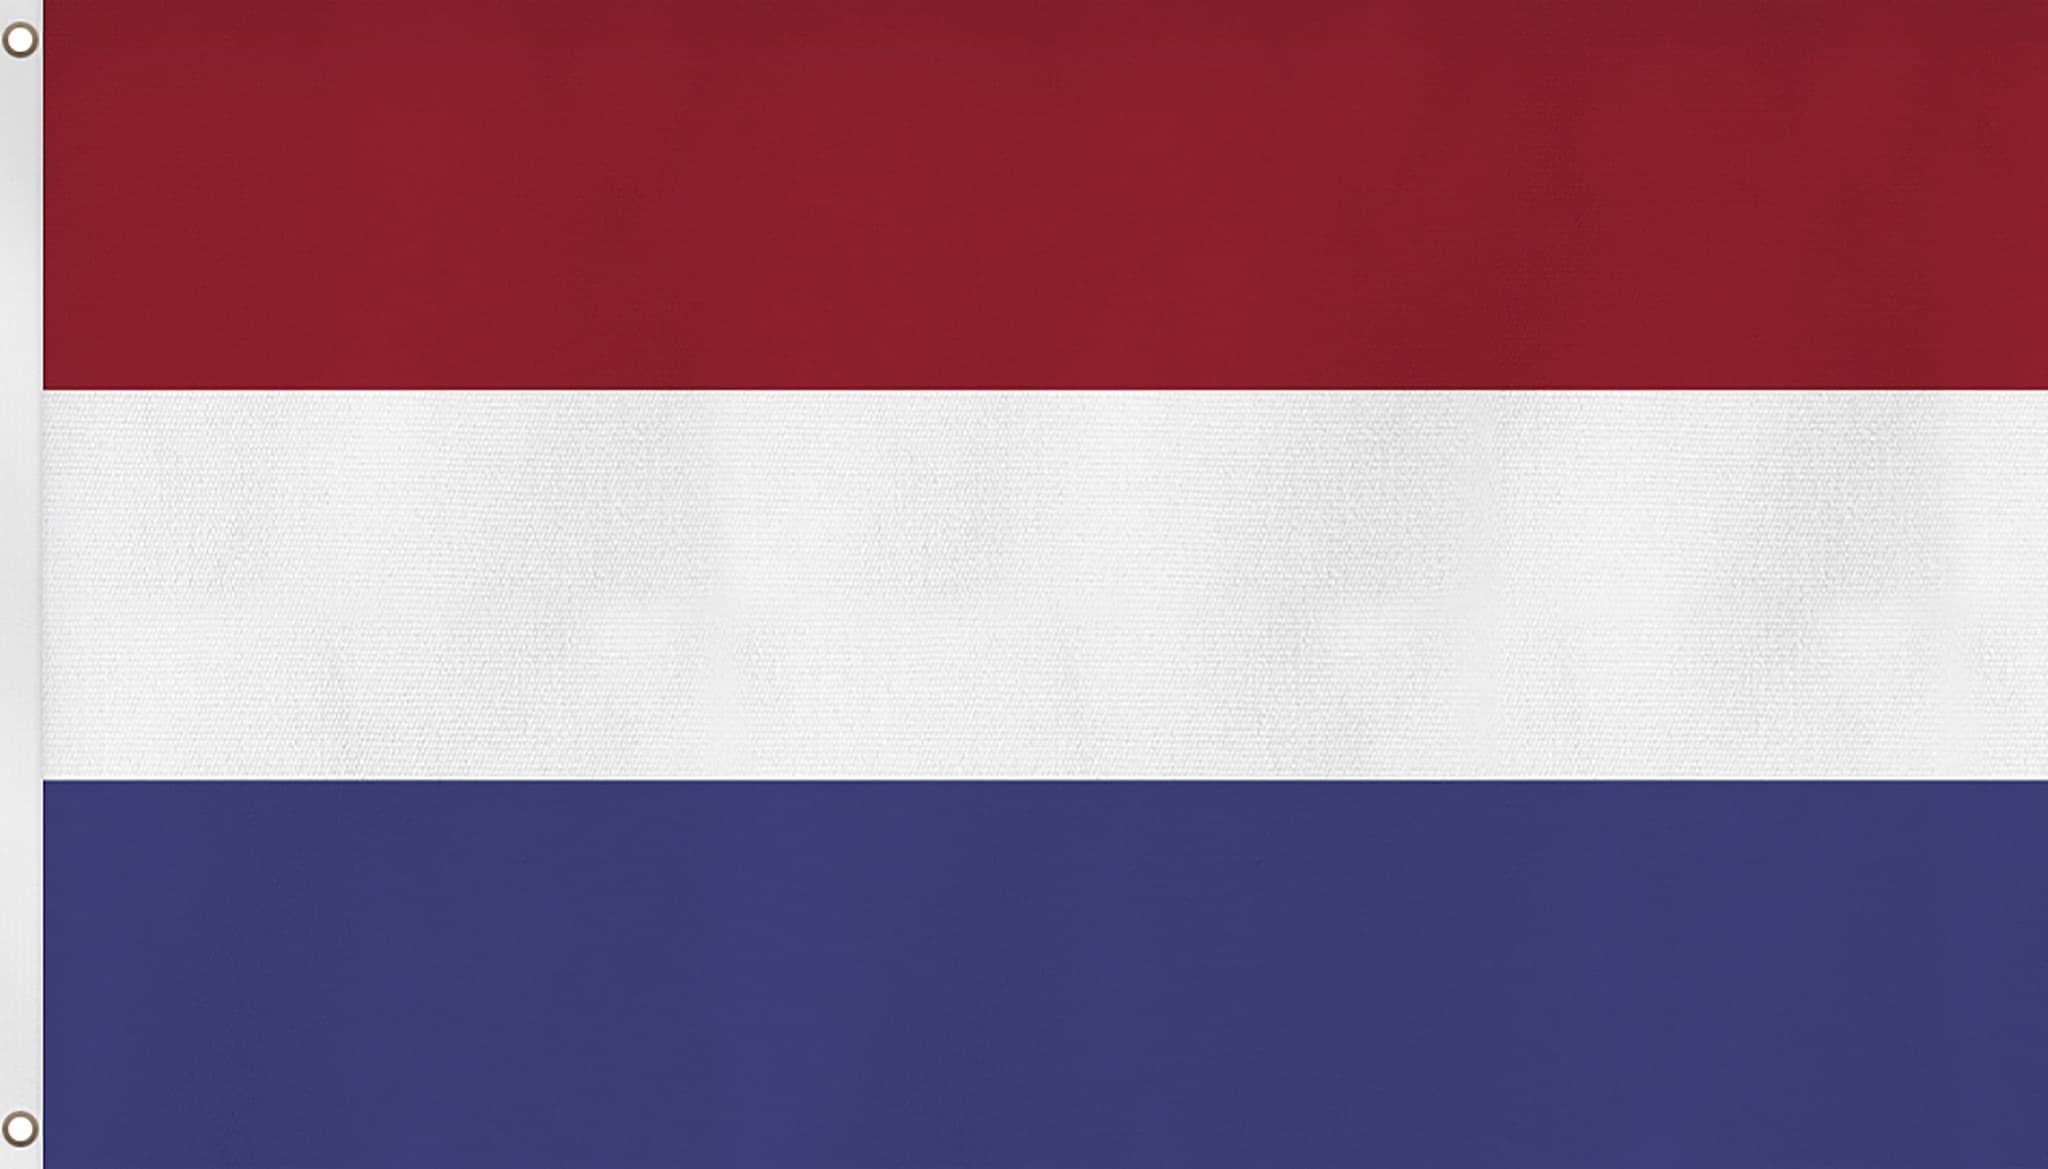 Bild von Fahne Länderflagge 90 cm x 150 cm Niederlande